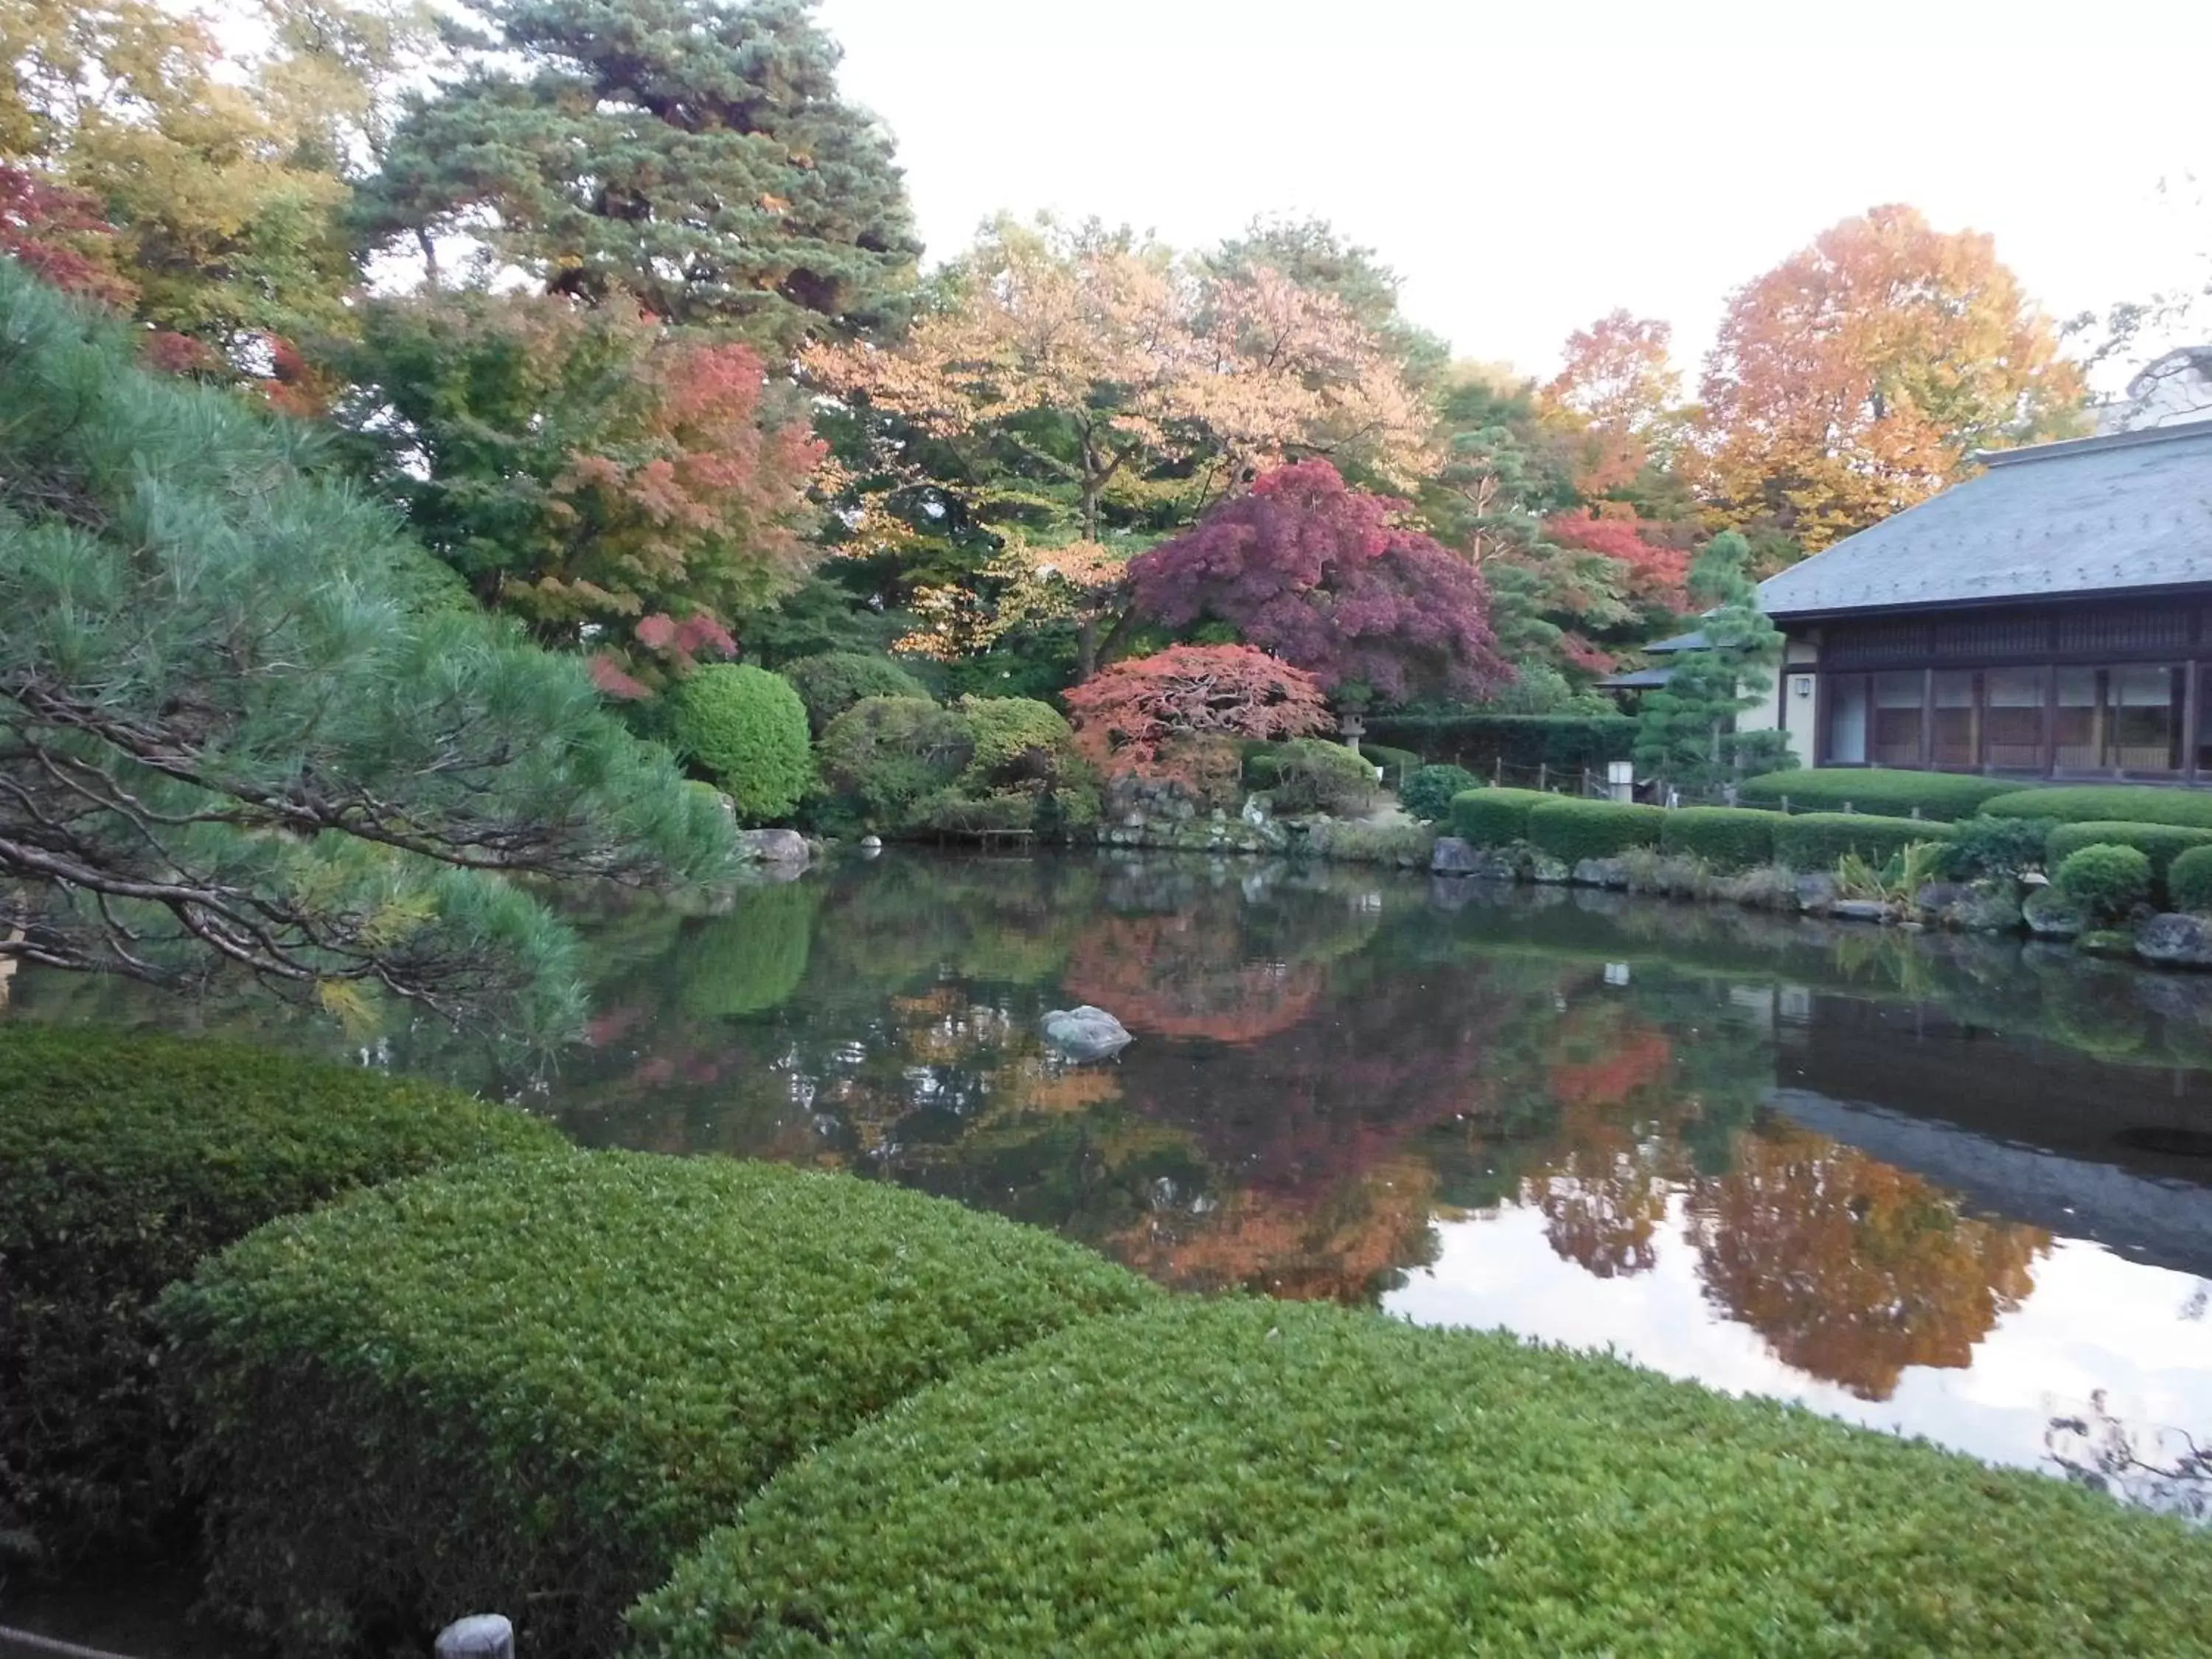 Location, Garden in Yamagata Kokusai Hotel